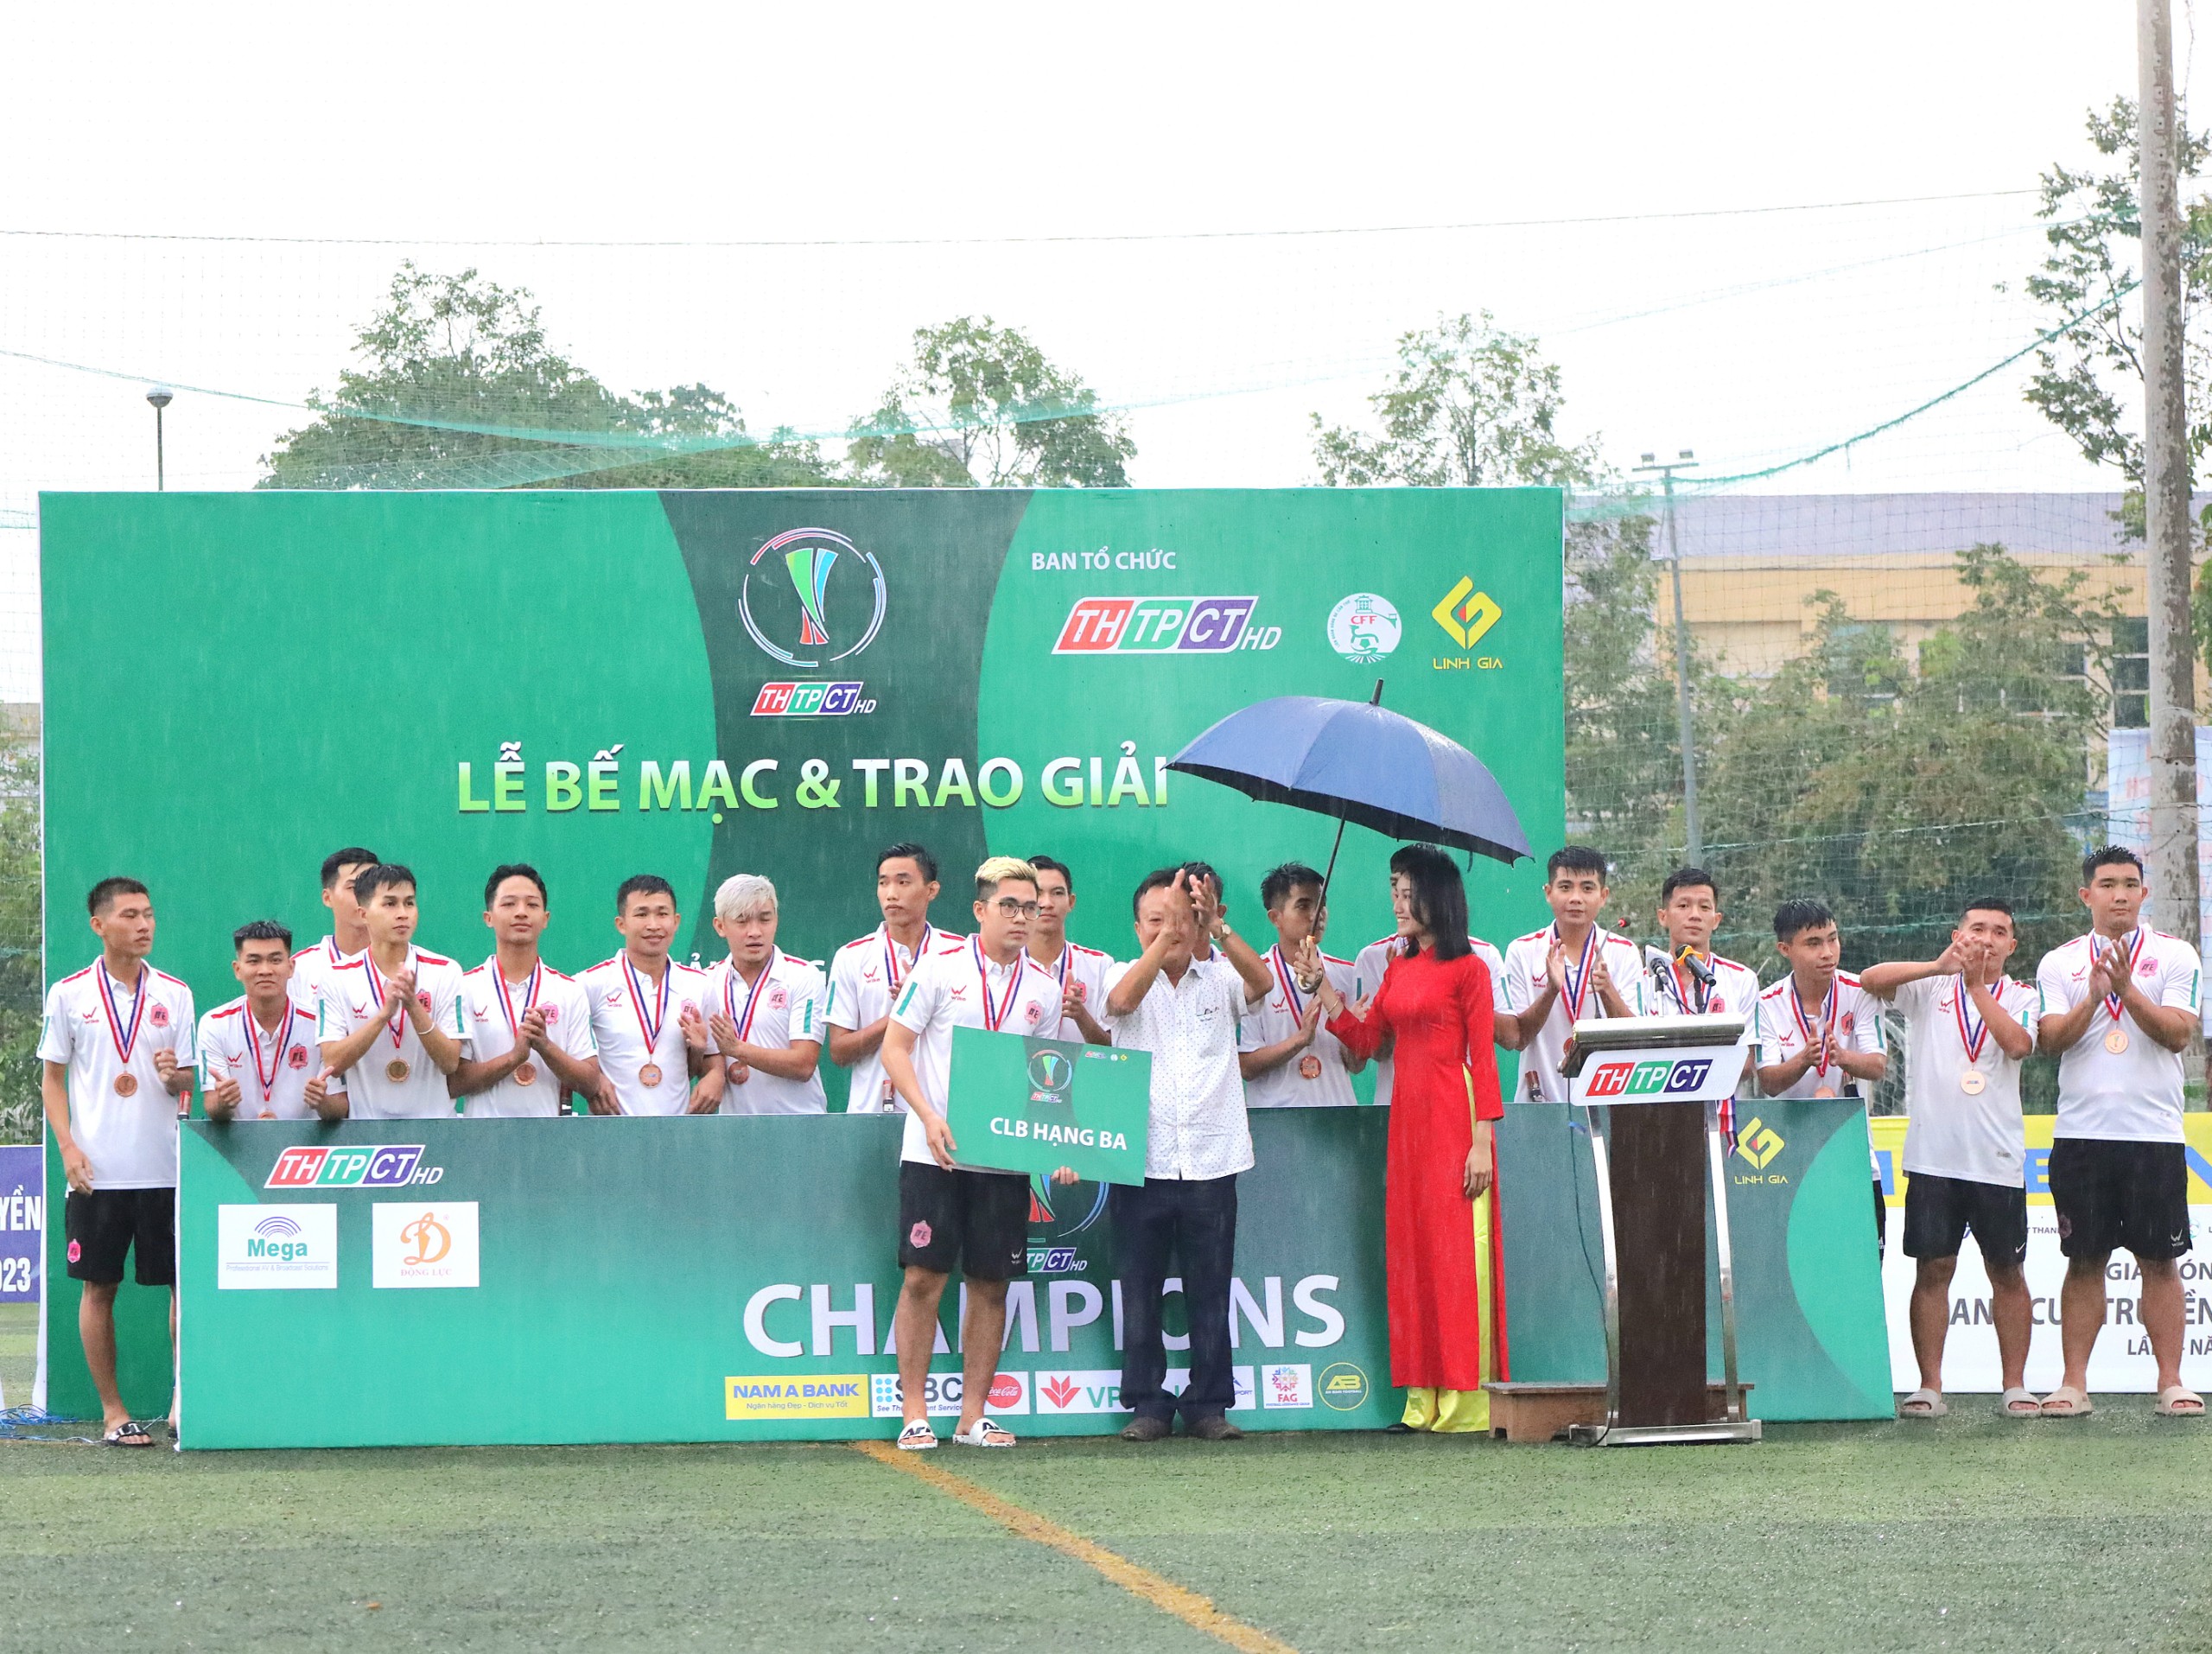 Ông Đỗ Minh Trưởng - Chủ tịch LĐBĐ Cần Thơ (CFF) trao giải cho đội đạt hạng ba.